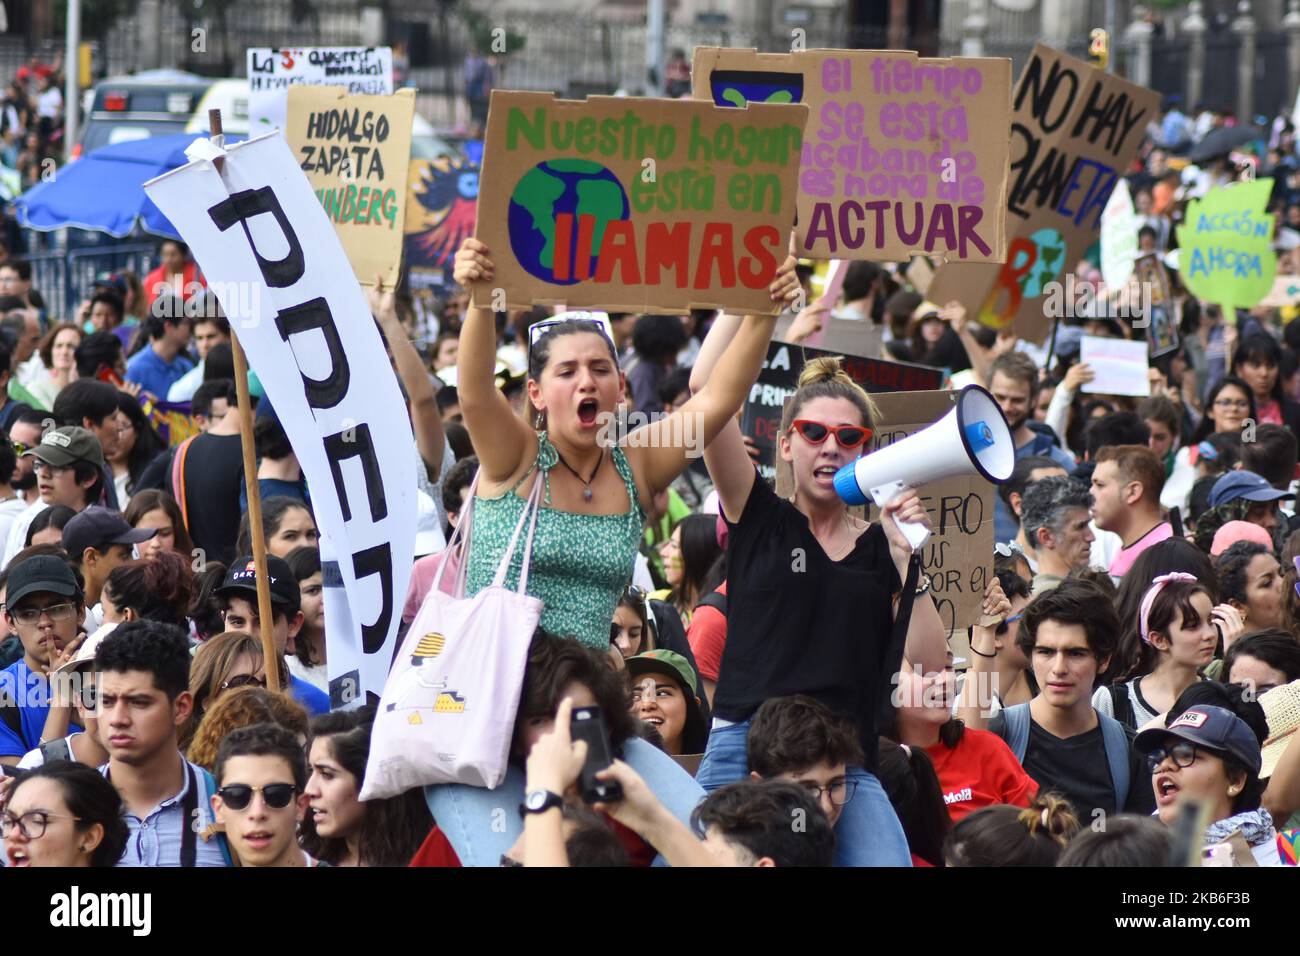 Am 20. September 2019 in Mexiko-Stadt, Mexiko, nehmen Menschen an einem protestmarsch gegen den Klimawandel Teil, der durch den globalen Streik am Freitag für die Zukunft in der Reforma Avenue angezichtert wurde. Rund 100 Länder wurden mobilisiert, um den Klimawandel zu bekämpfen. Die aktivistische Bewegung wird von jungen Menschen geführt, die anfangen, ihre ideale global zu überschreiten. (Foto von Eyepix/NurPhoto) Stockfoto